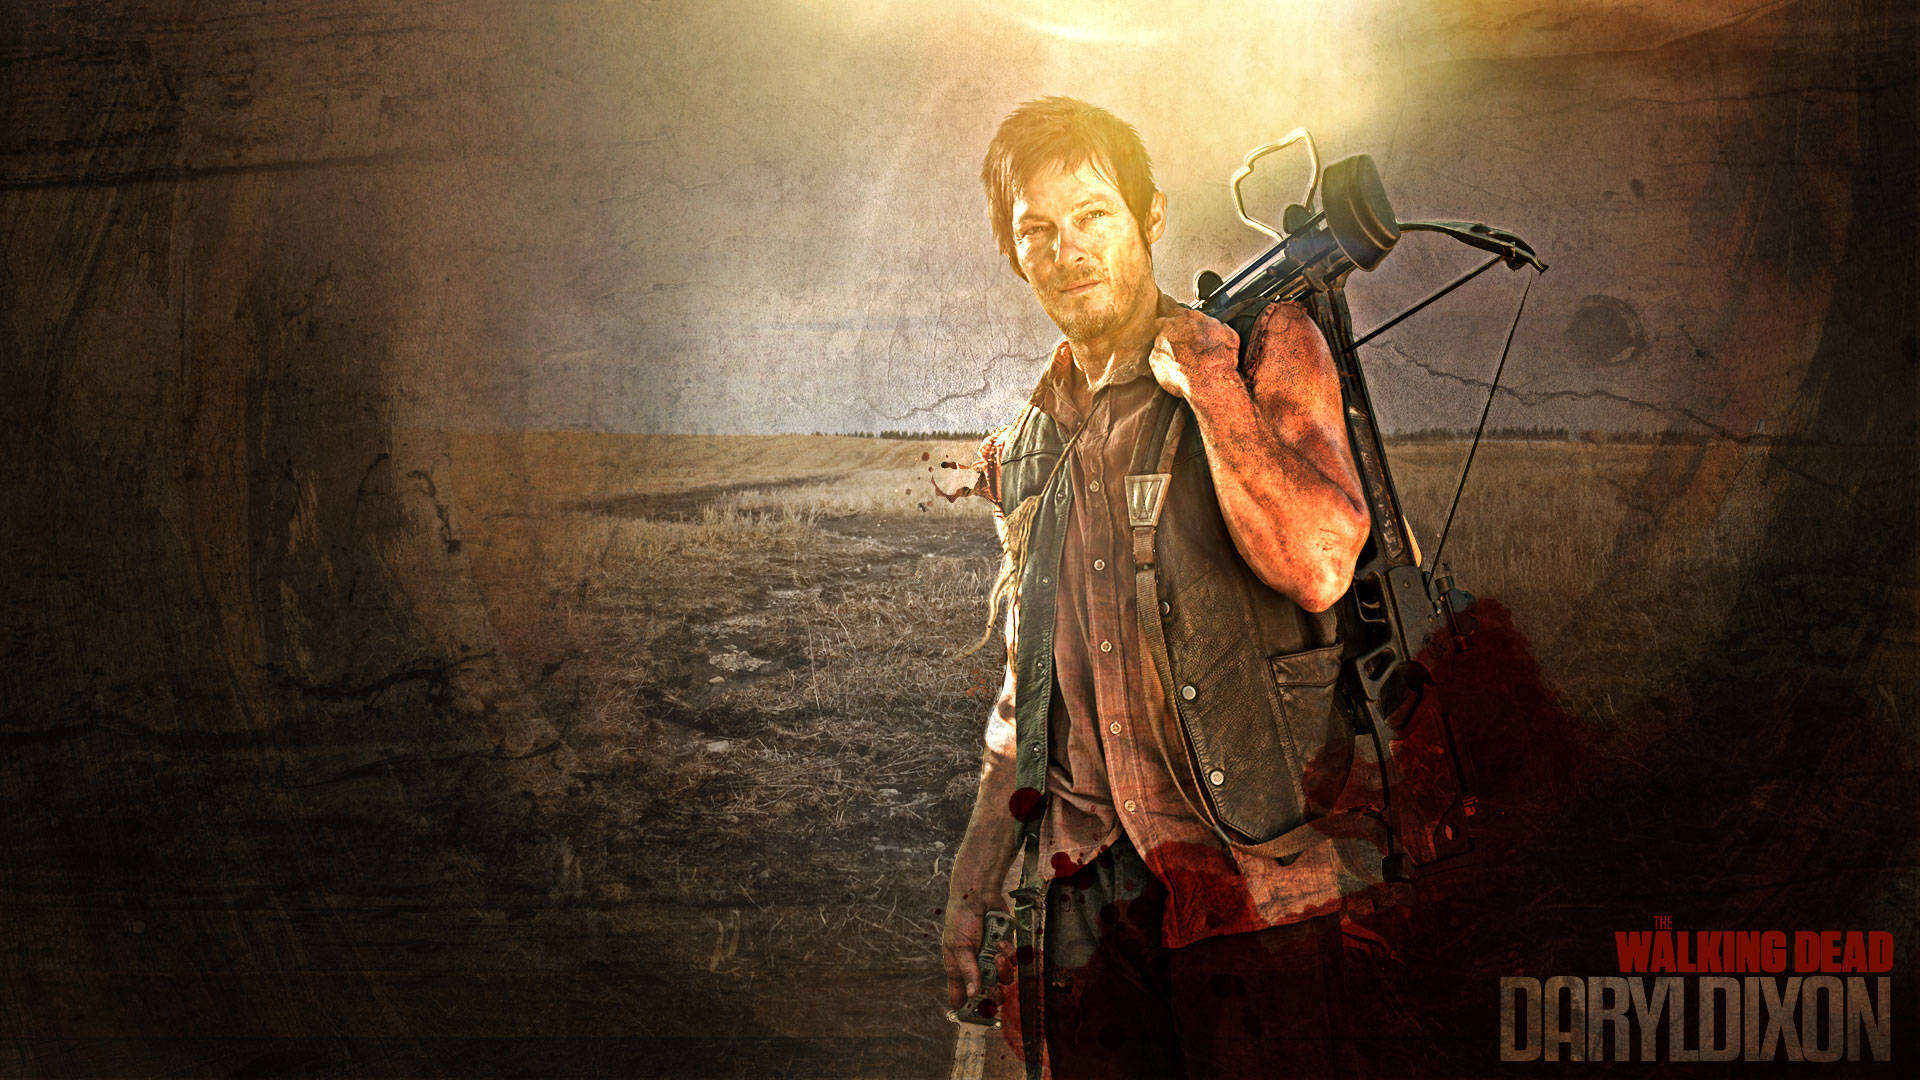 Walking Dead Daryl 1920 X 1080 Wallpaper